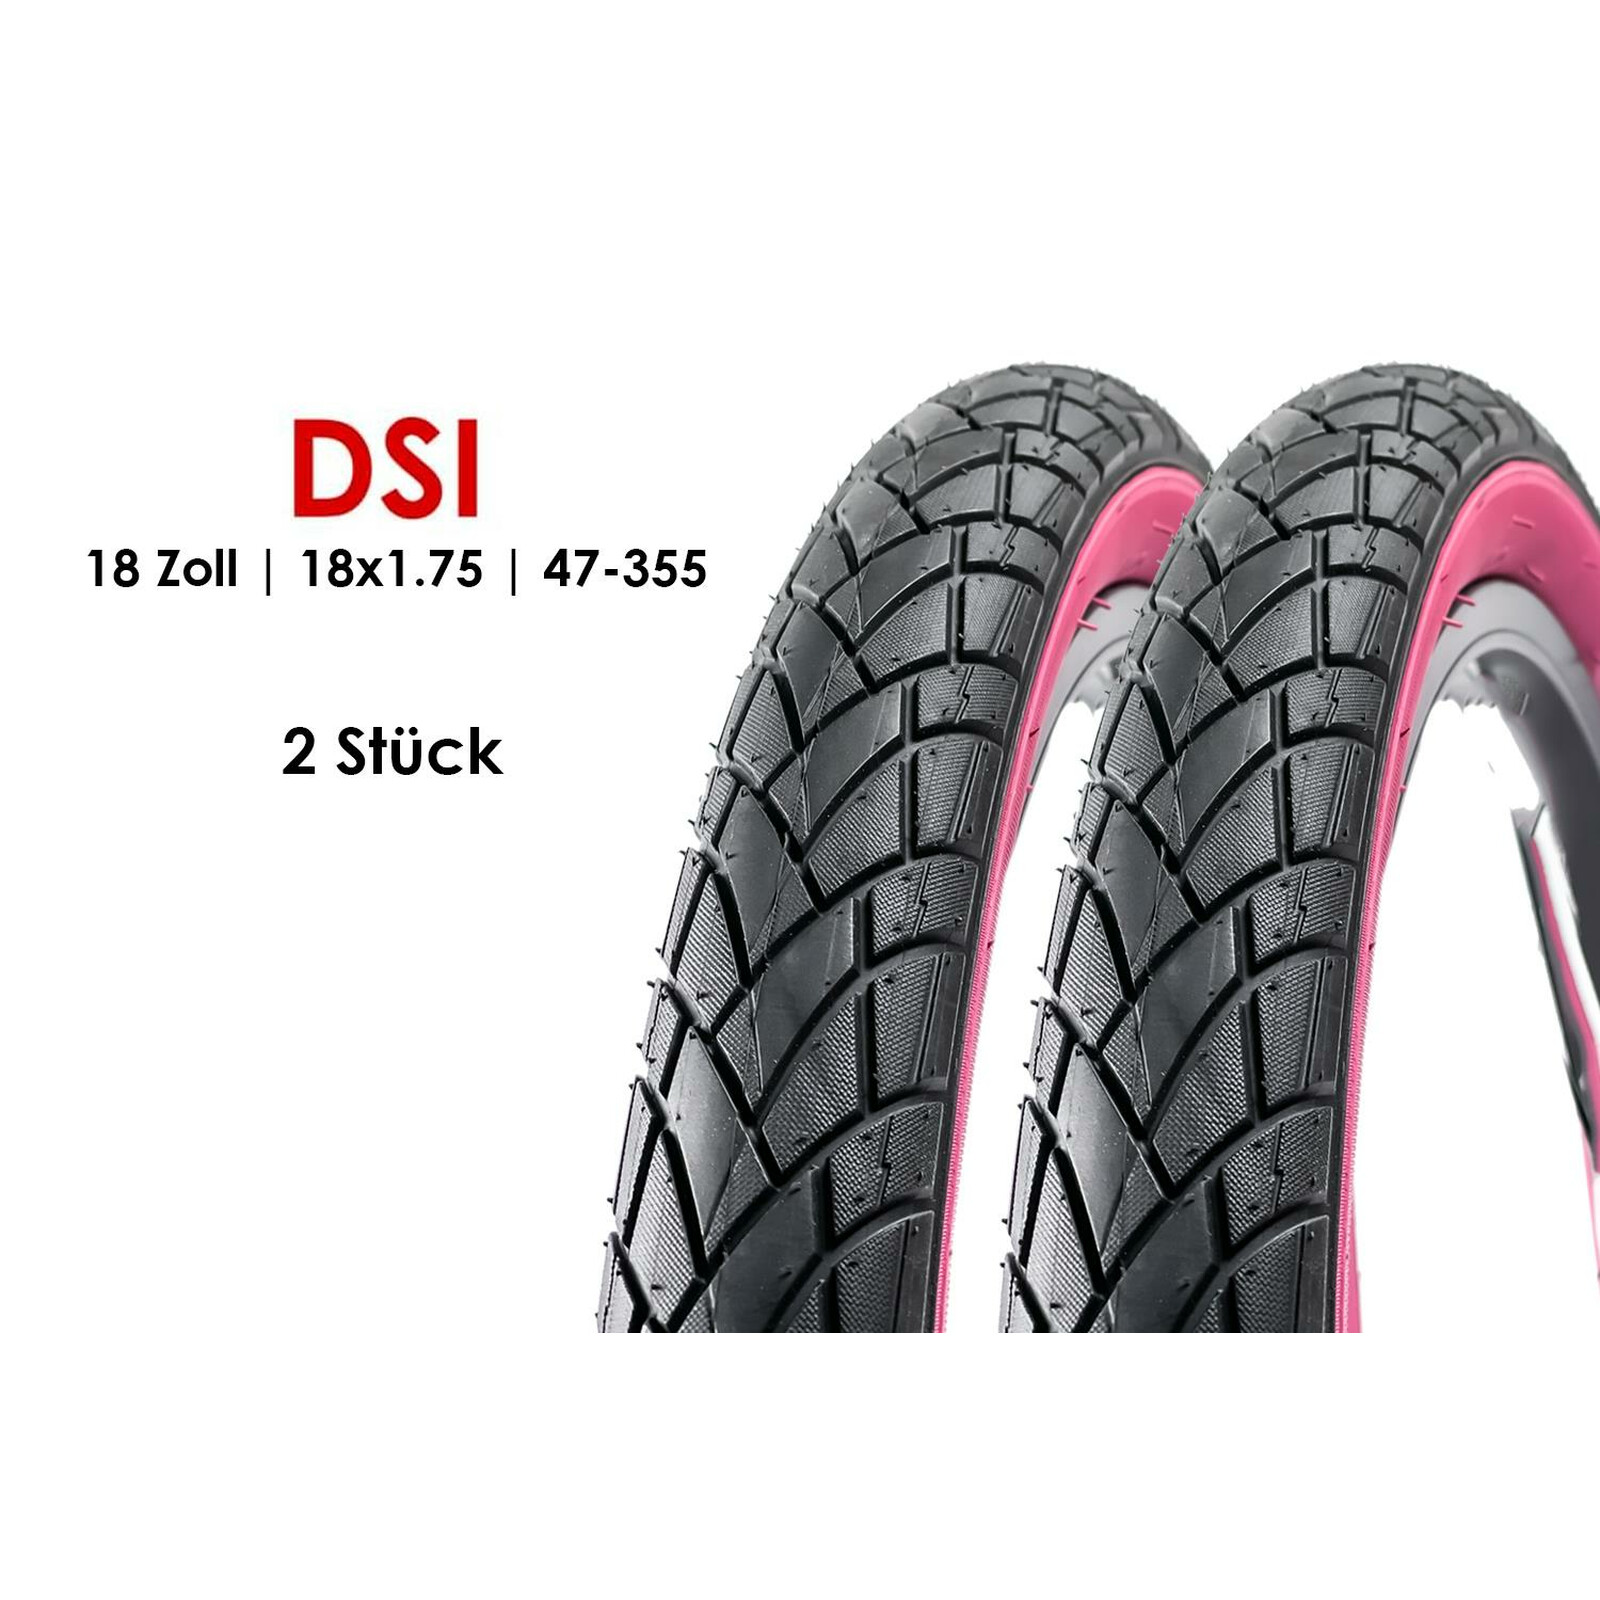 perfekte Qualität zum besten Preis Verschleißfeste Reifen für eine komfortable und sichere Fahrt 47-355 18 Zoll Fahrradreifen | 18x 1,75 Fahrrad Mantel Ralson Reifen R-3201 